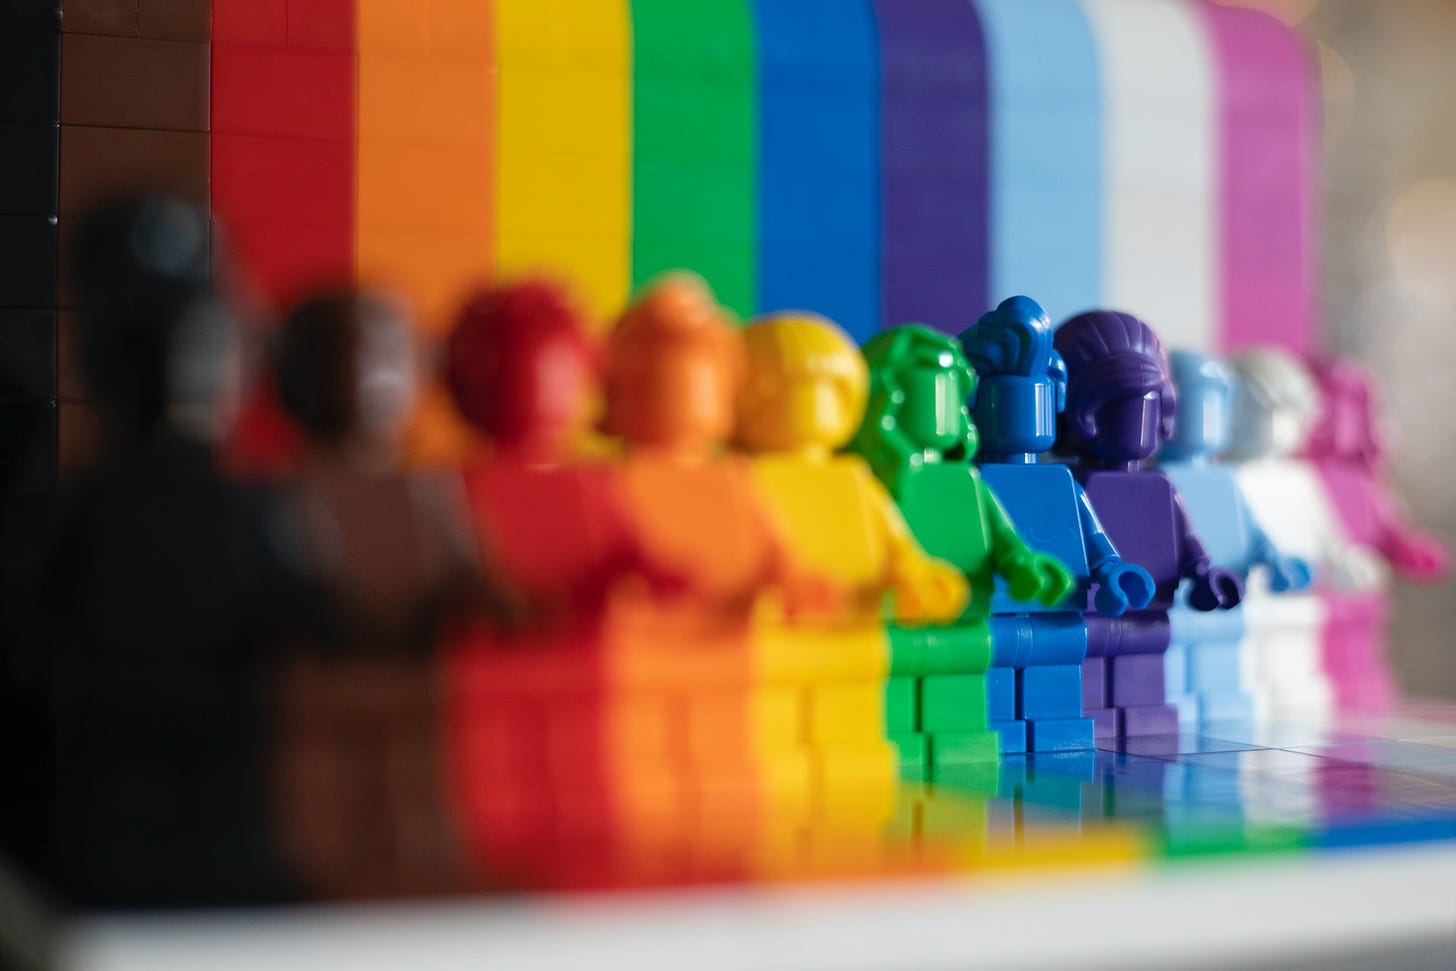 Omini della Lego di tutti i colori, ciascuno davanti a un colore diverso che forma una bandiera arcobaleno.